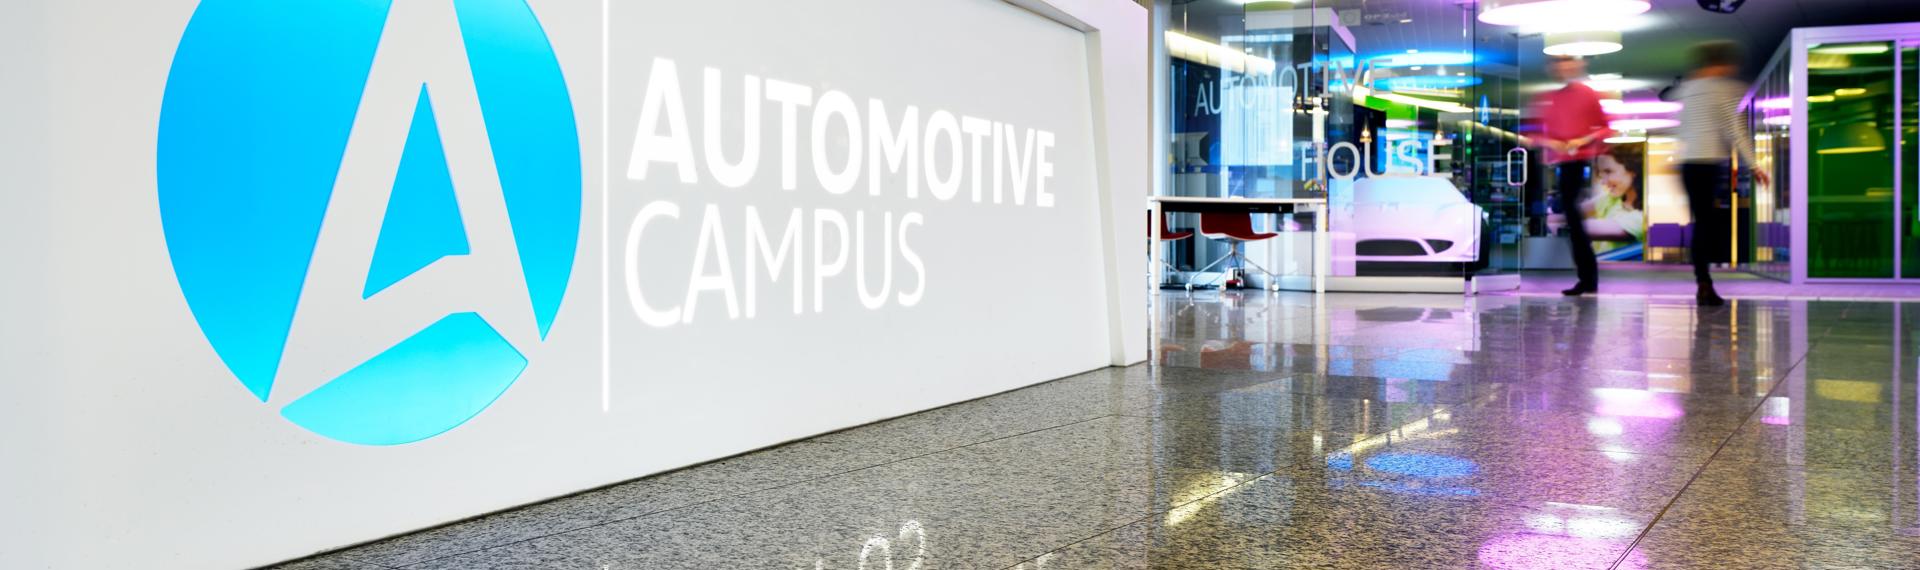 Der Automotive Campus in Helmond ist ein Nährboden für Innovationen im Mobilitätsbereich